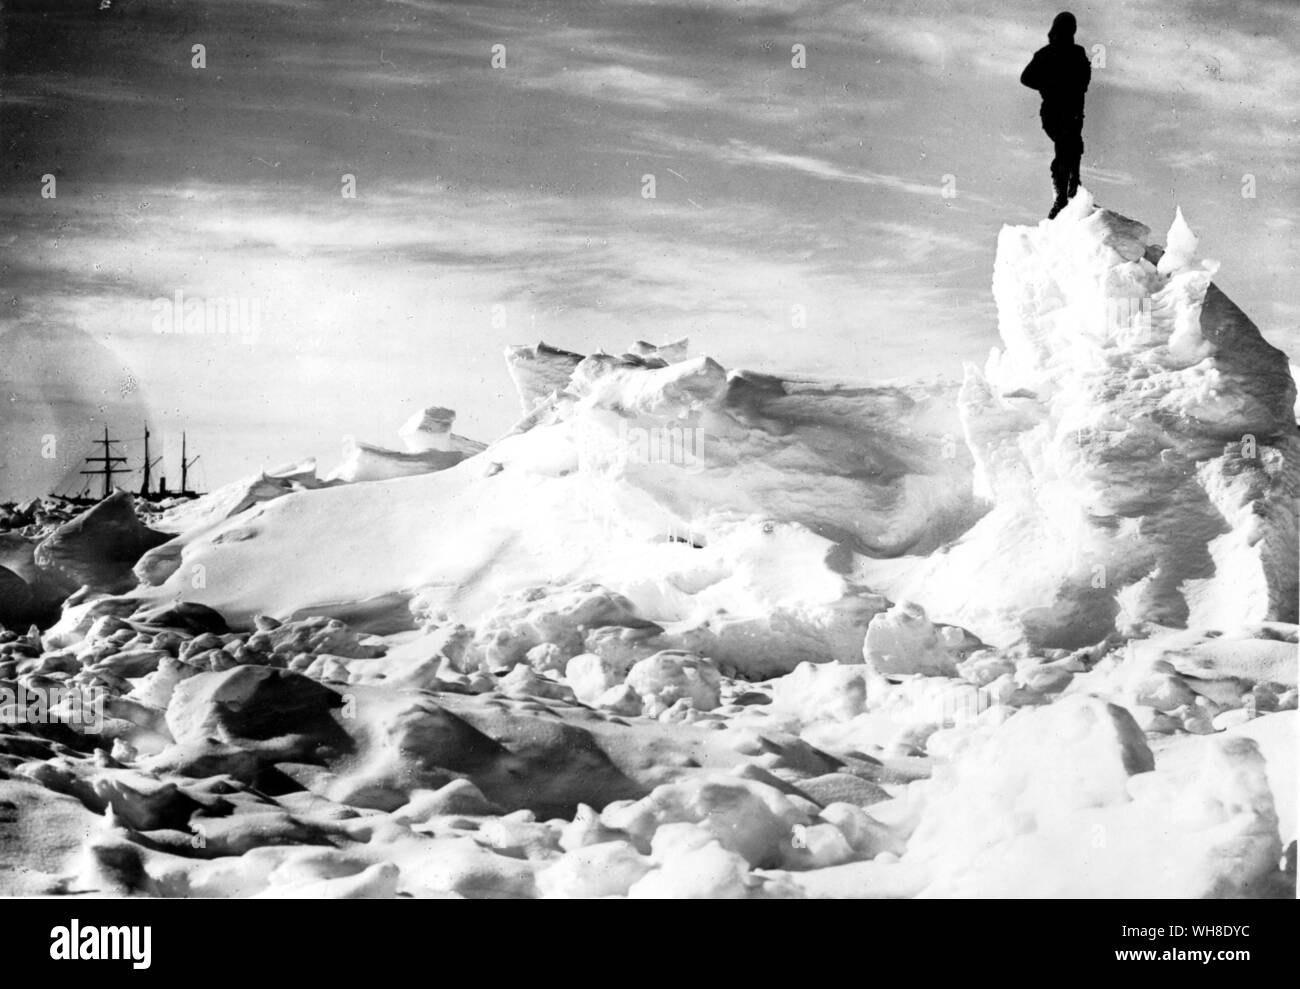 Ausdauer Schiff im Hintergrund. 1916, Sir Ernest Shackleton's Schiff Ausdauer wurde in den Eisschollen zermalmt. Kapitän Sir Ernest Henry Shackleton (1874-1922) war ein anglo-irischen Explorer, jetzt hauptsächlich für seine Antarktis Expedition von 1914-1916 im Schiff Ausdauer erinnert. Aus der Antarktis: Der letzte Kontinent, der von Ian Cameron Seite 65. Stockfoto